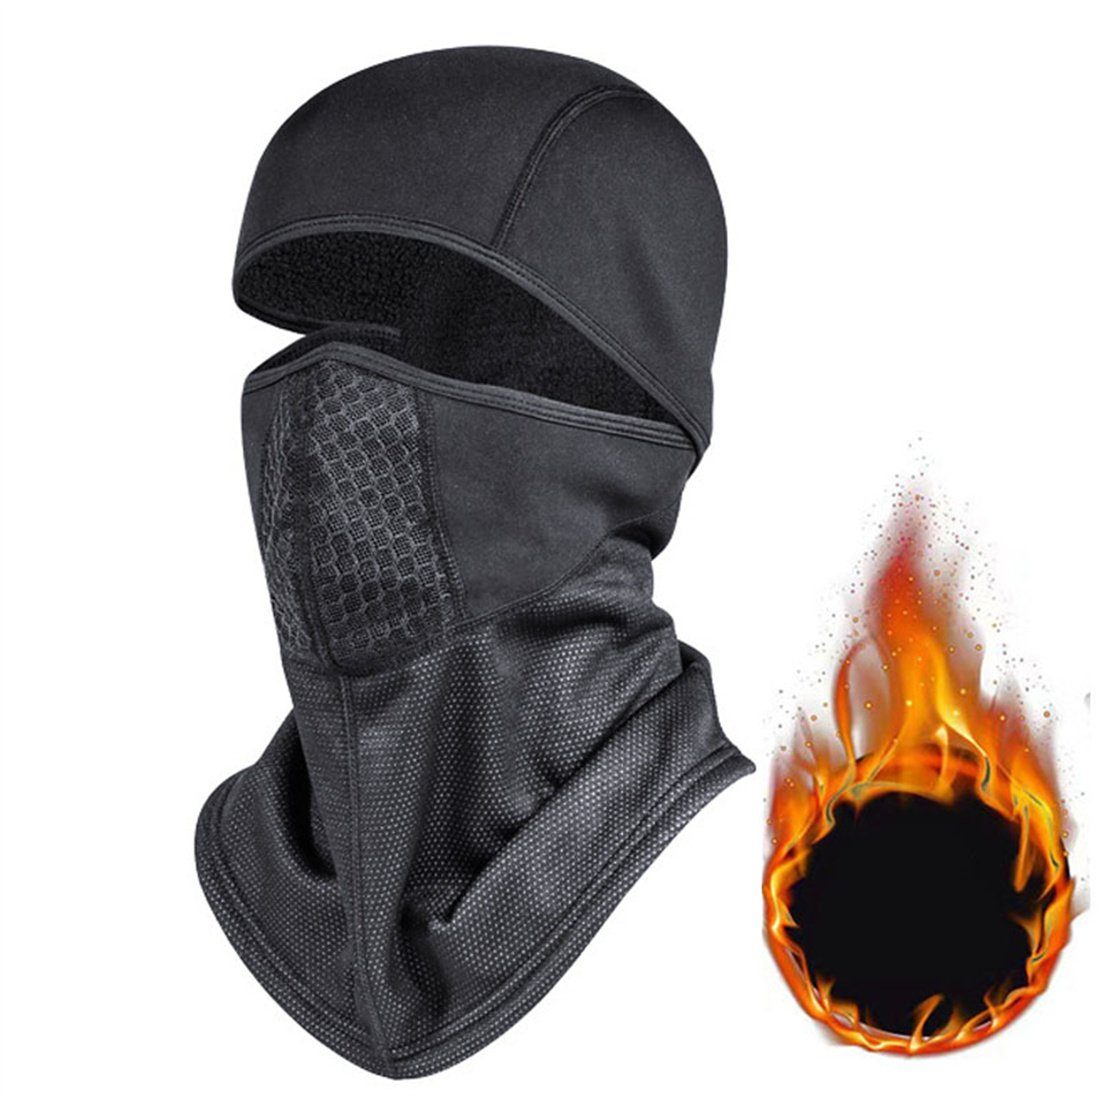 Kopfbedeckung, DÖRÖY Halsschutz Sturmhaube Outdoor-Radfahren Schwarz unisex Winter-Ski-Maske,